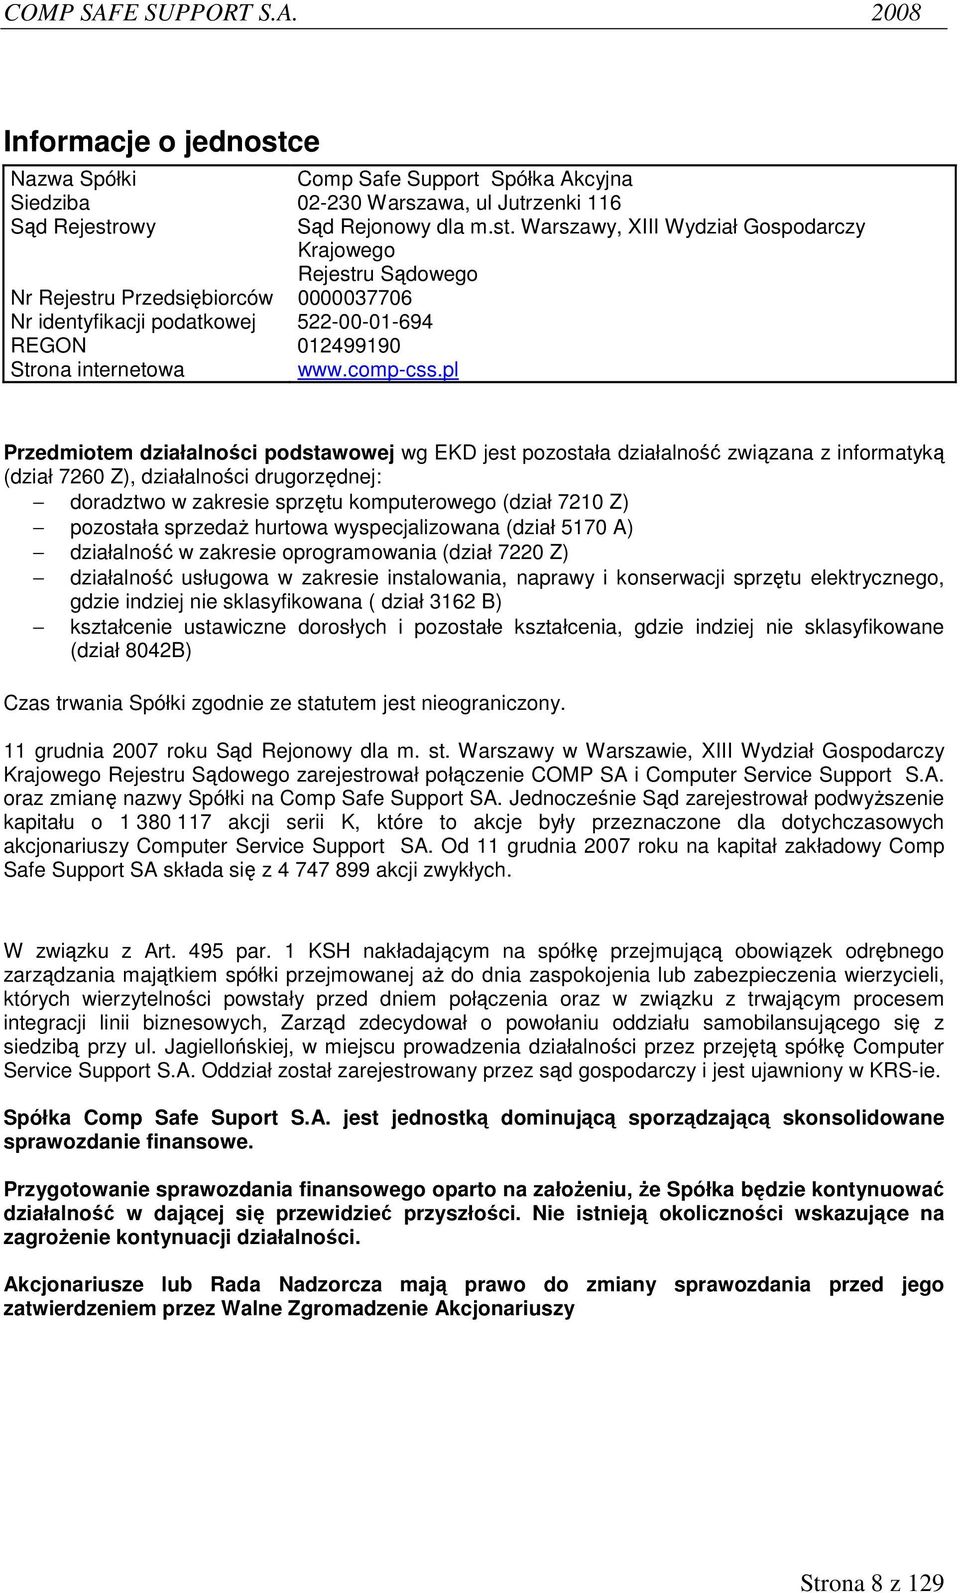 Warszawy, XIII Wydział Gospodarczy Krajowego Rejestru Sądowego Przedmiotem działalności podstawowej wg EKD jest pozostała działalność związana z informatyką (dział 7260 Z), działalności drugorzędnej: